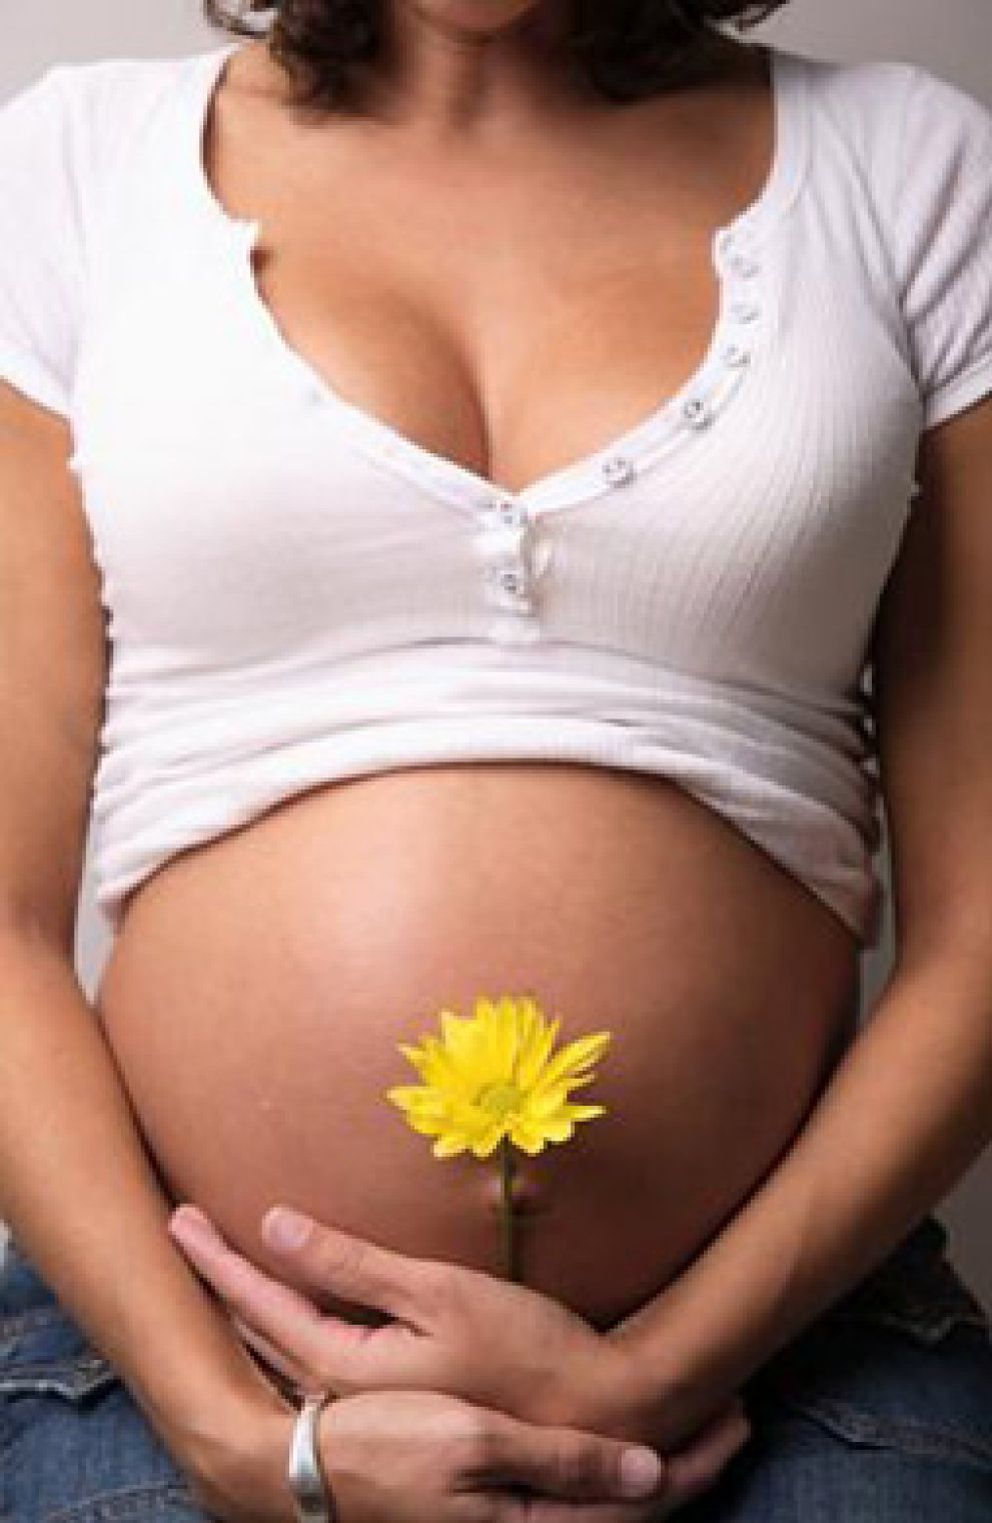 Foto: A los 35 años, el 40% de los embriones son ya defectuosos